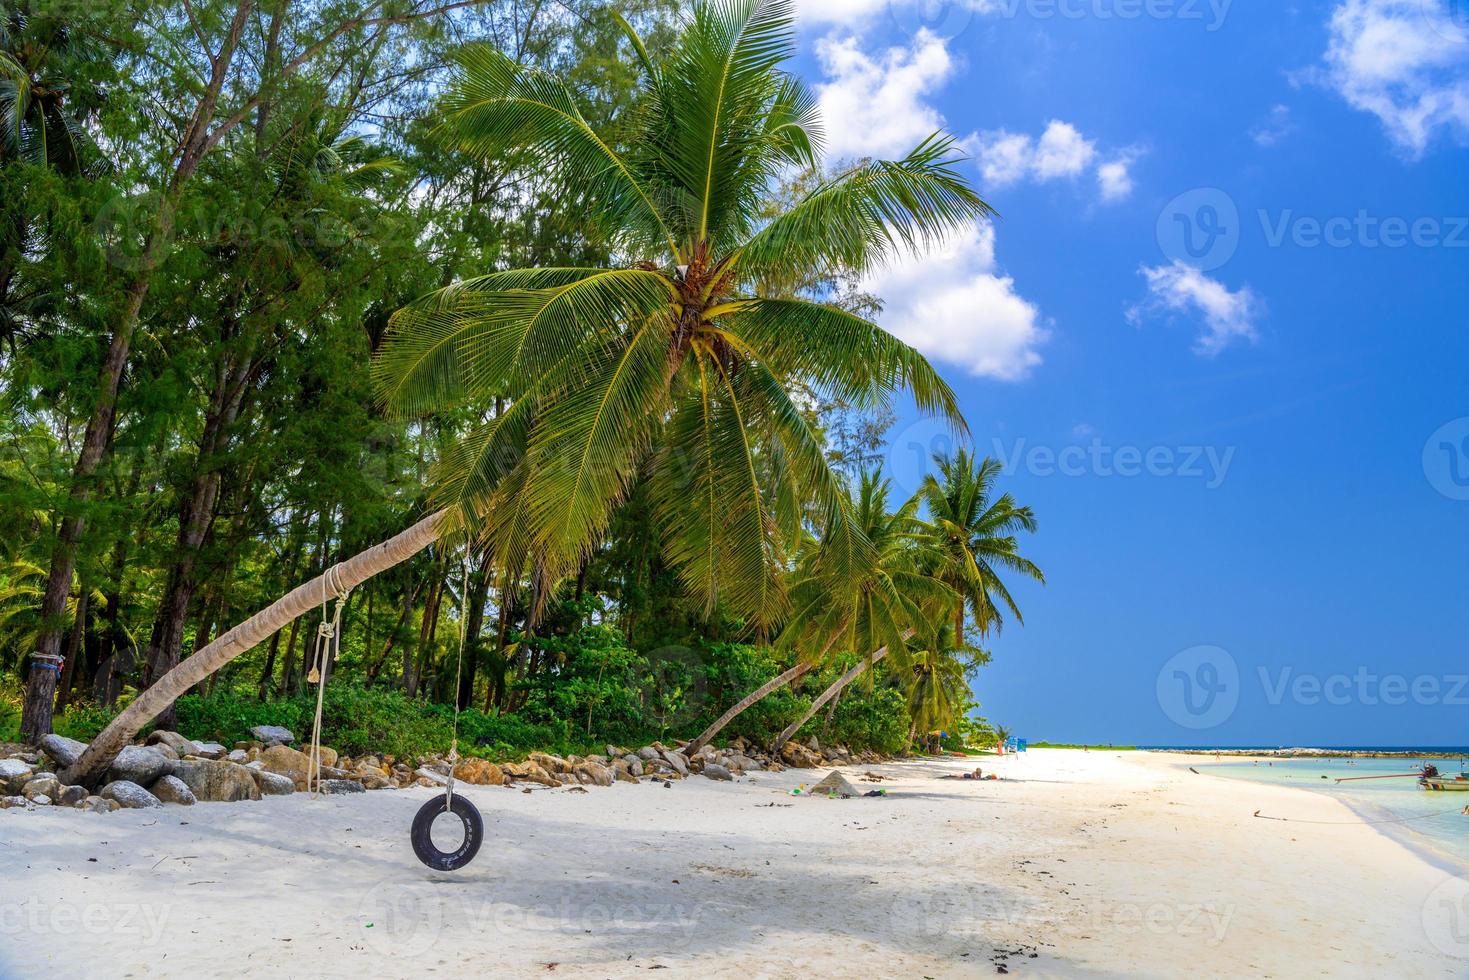 Kokospalme mit schwingendem Reifen, Strand von Malibu, Insel Koh Phangan foto